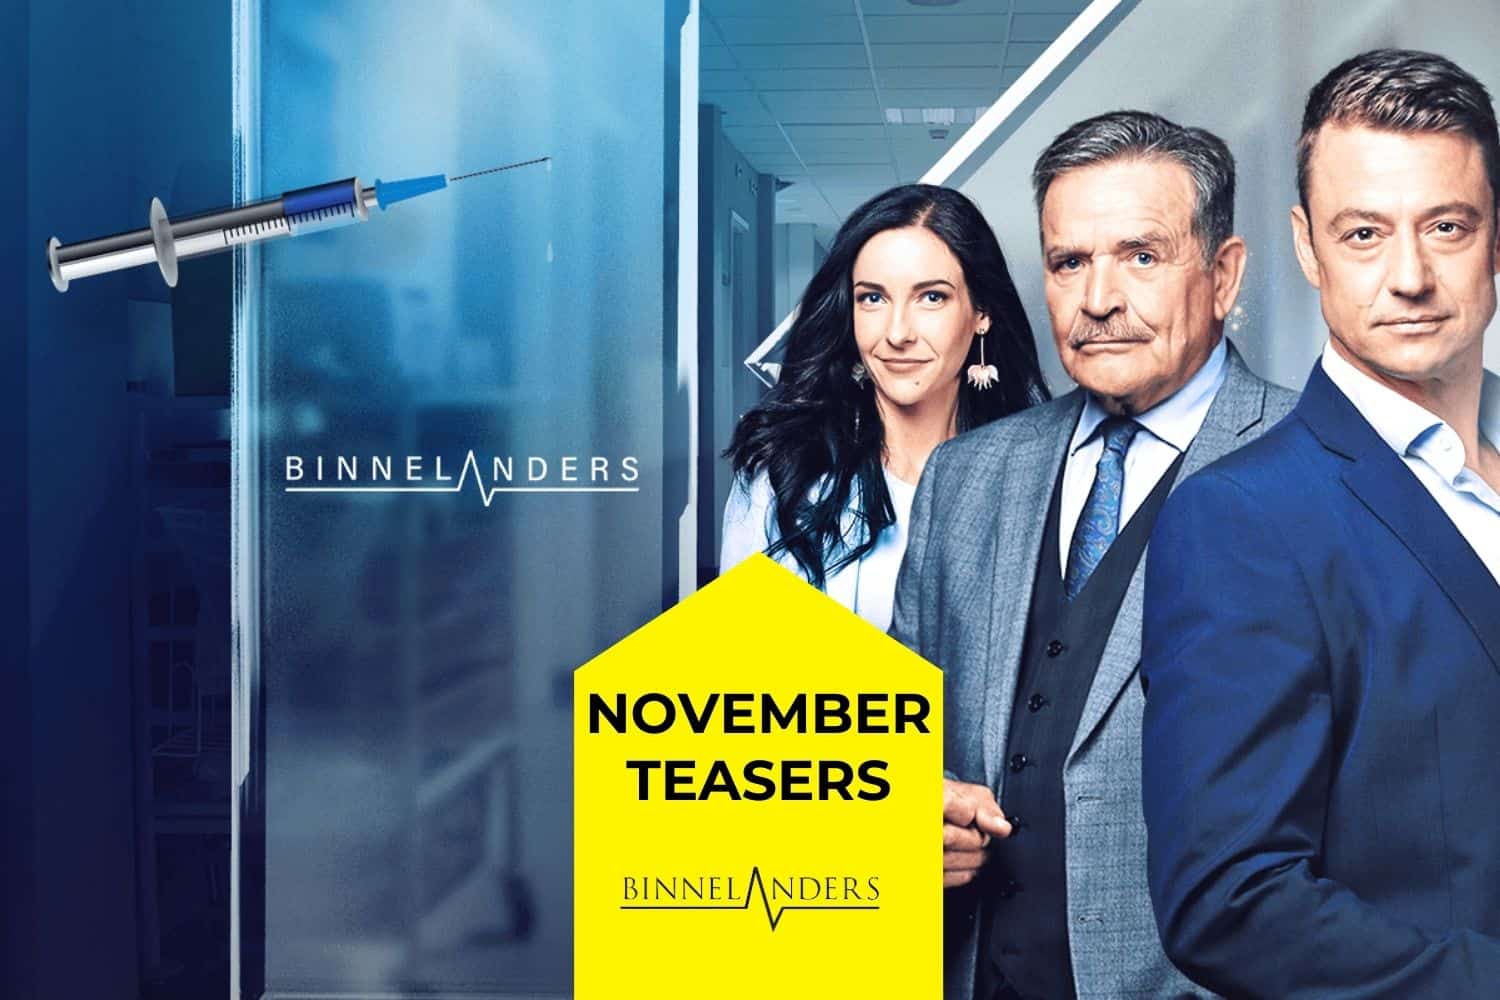 Binnelanders this November